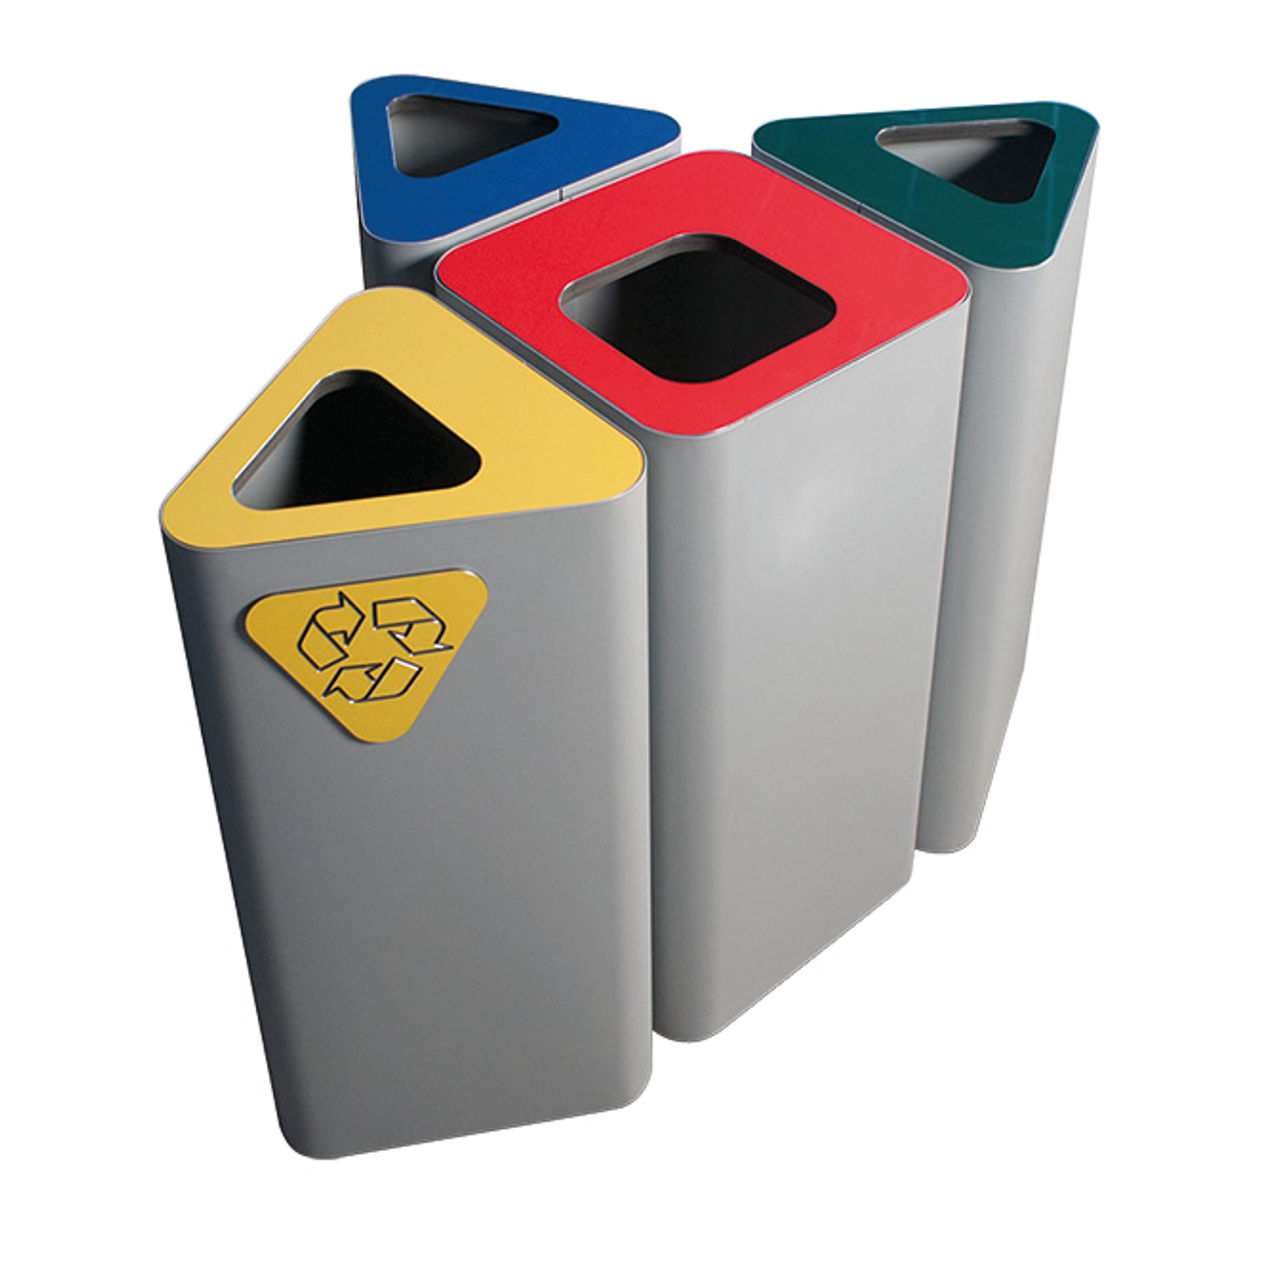 Hochwertiger Outdoor Abfallbehälter aus Stahl verschließbar und